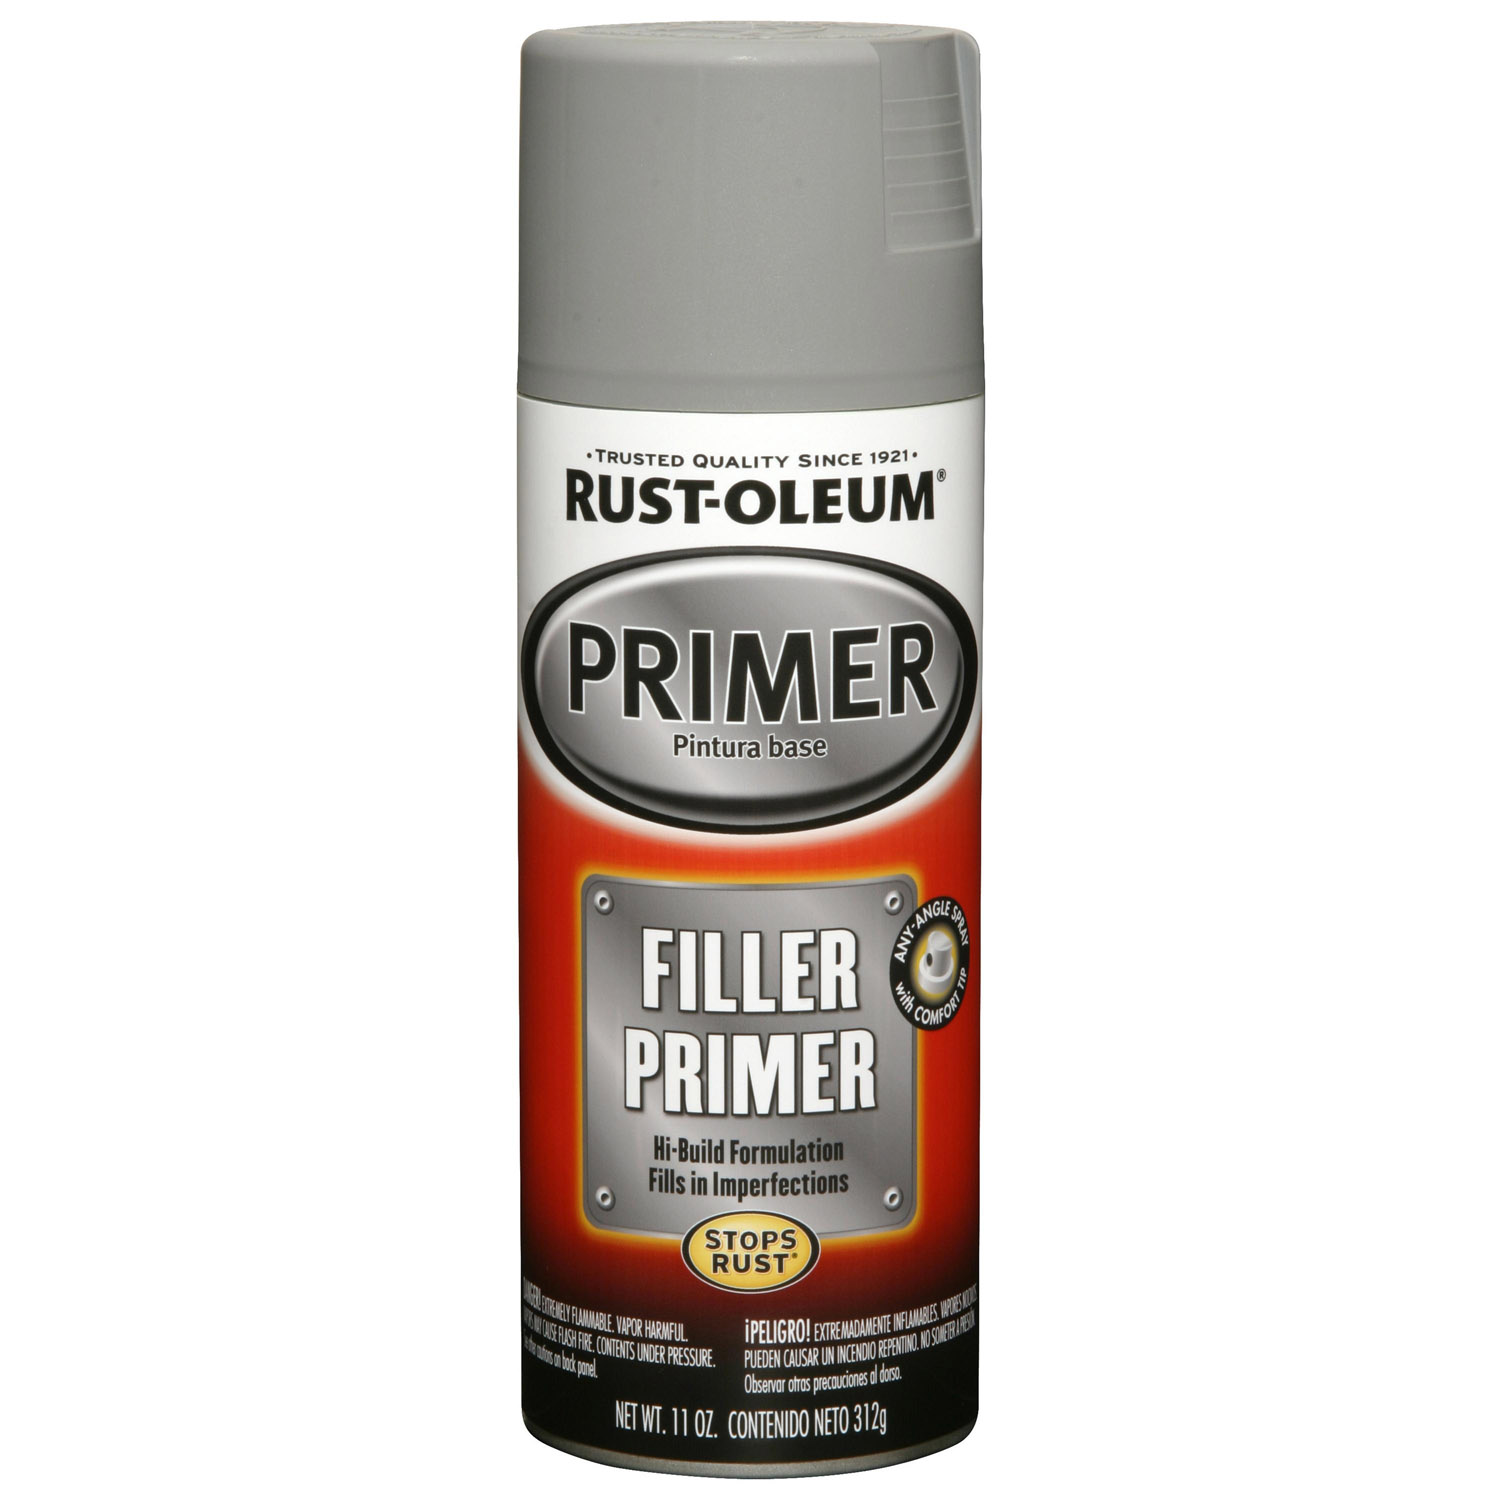 Rust-Oleum Filler Primer - image 1 of 1